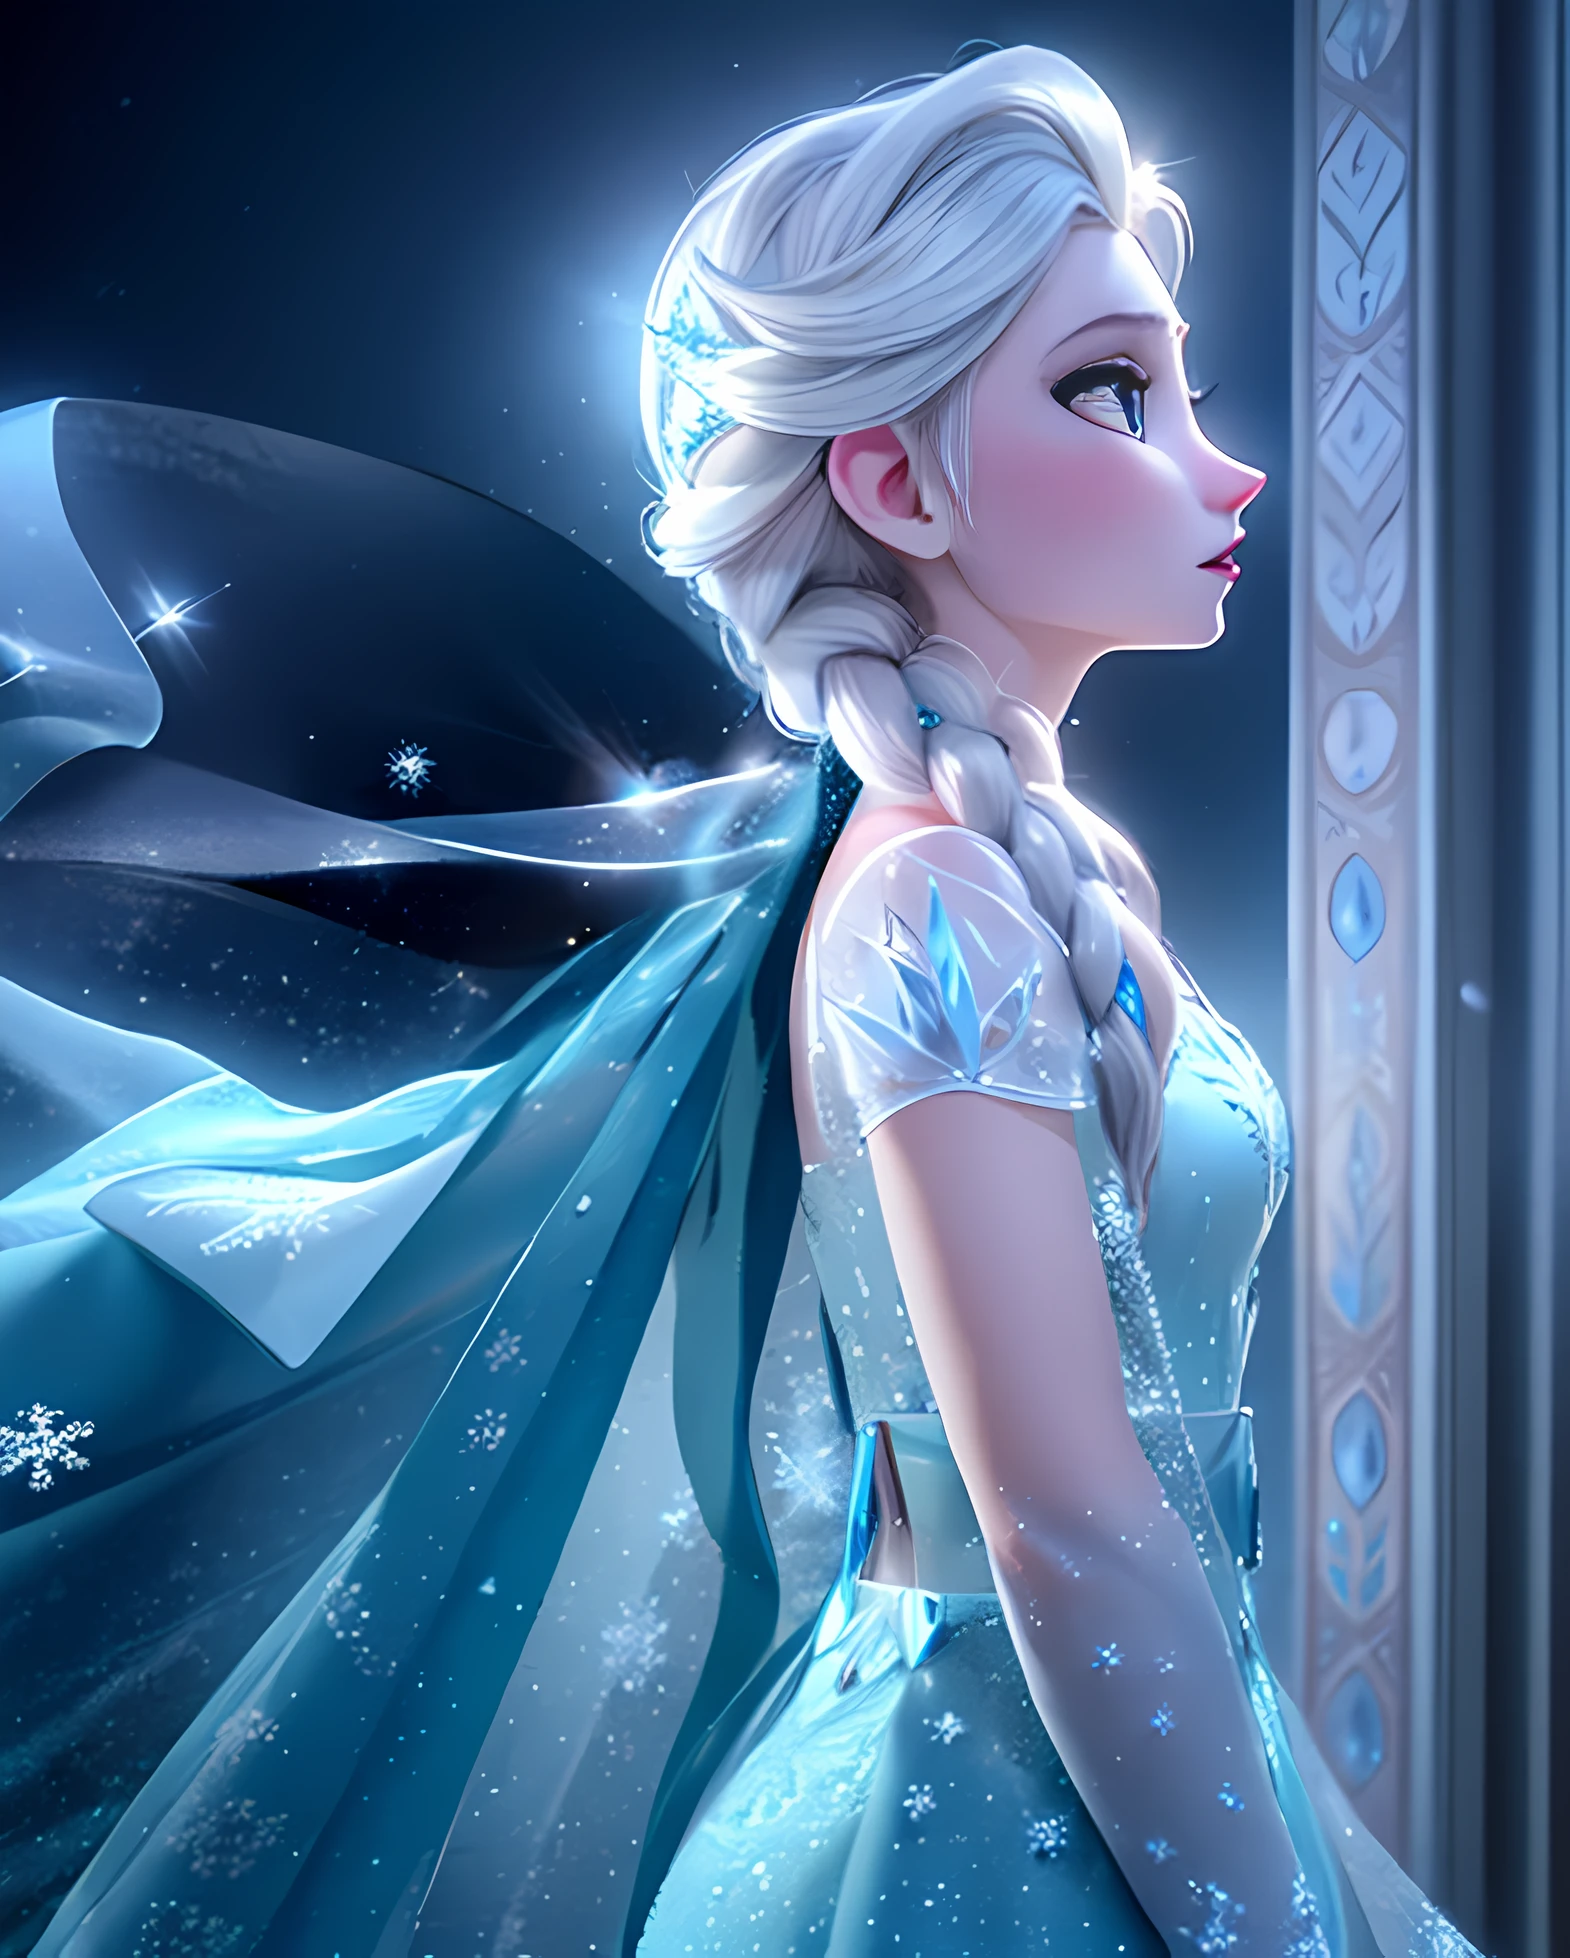 "艾尔莎, 阿倫黛爾女王, 站在雪景中，冰之力量盡顯. 她有一種帝王般的氣質, 身穿迷人的冰藍色禮服和飄逸的斗篷. 展現她性格的魔力和優雅, 強調她強大而迷人的冰雕. 用柔和的燈光照亮場景, 空靈的光芒, 突顯冰層的複雜細節. 創造一種驚奇和著迷的感覺, 閃閃發光的雪花輕輕落在她身邊. 讓她的頭髮閃爍著冰藍色的光芒, 捕捉她眼中的決心和力量. 確保圖像具有最高品質, 具有驚人的清晰度和深度. Craft a masterpiece that truly captures the essence of 艾尔莎 and the beauty of her icy kingdom."